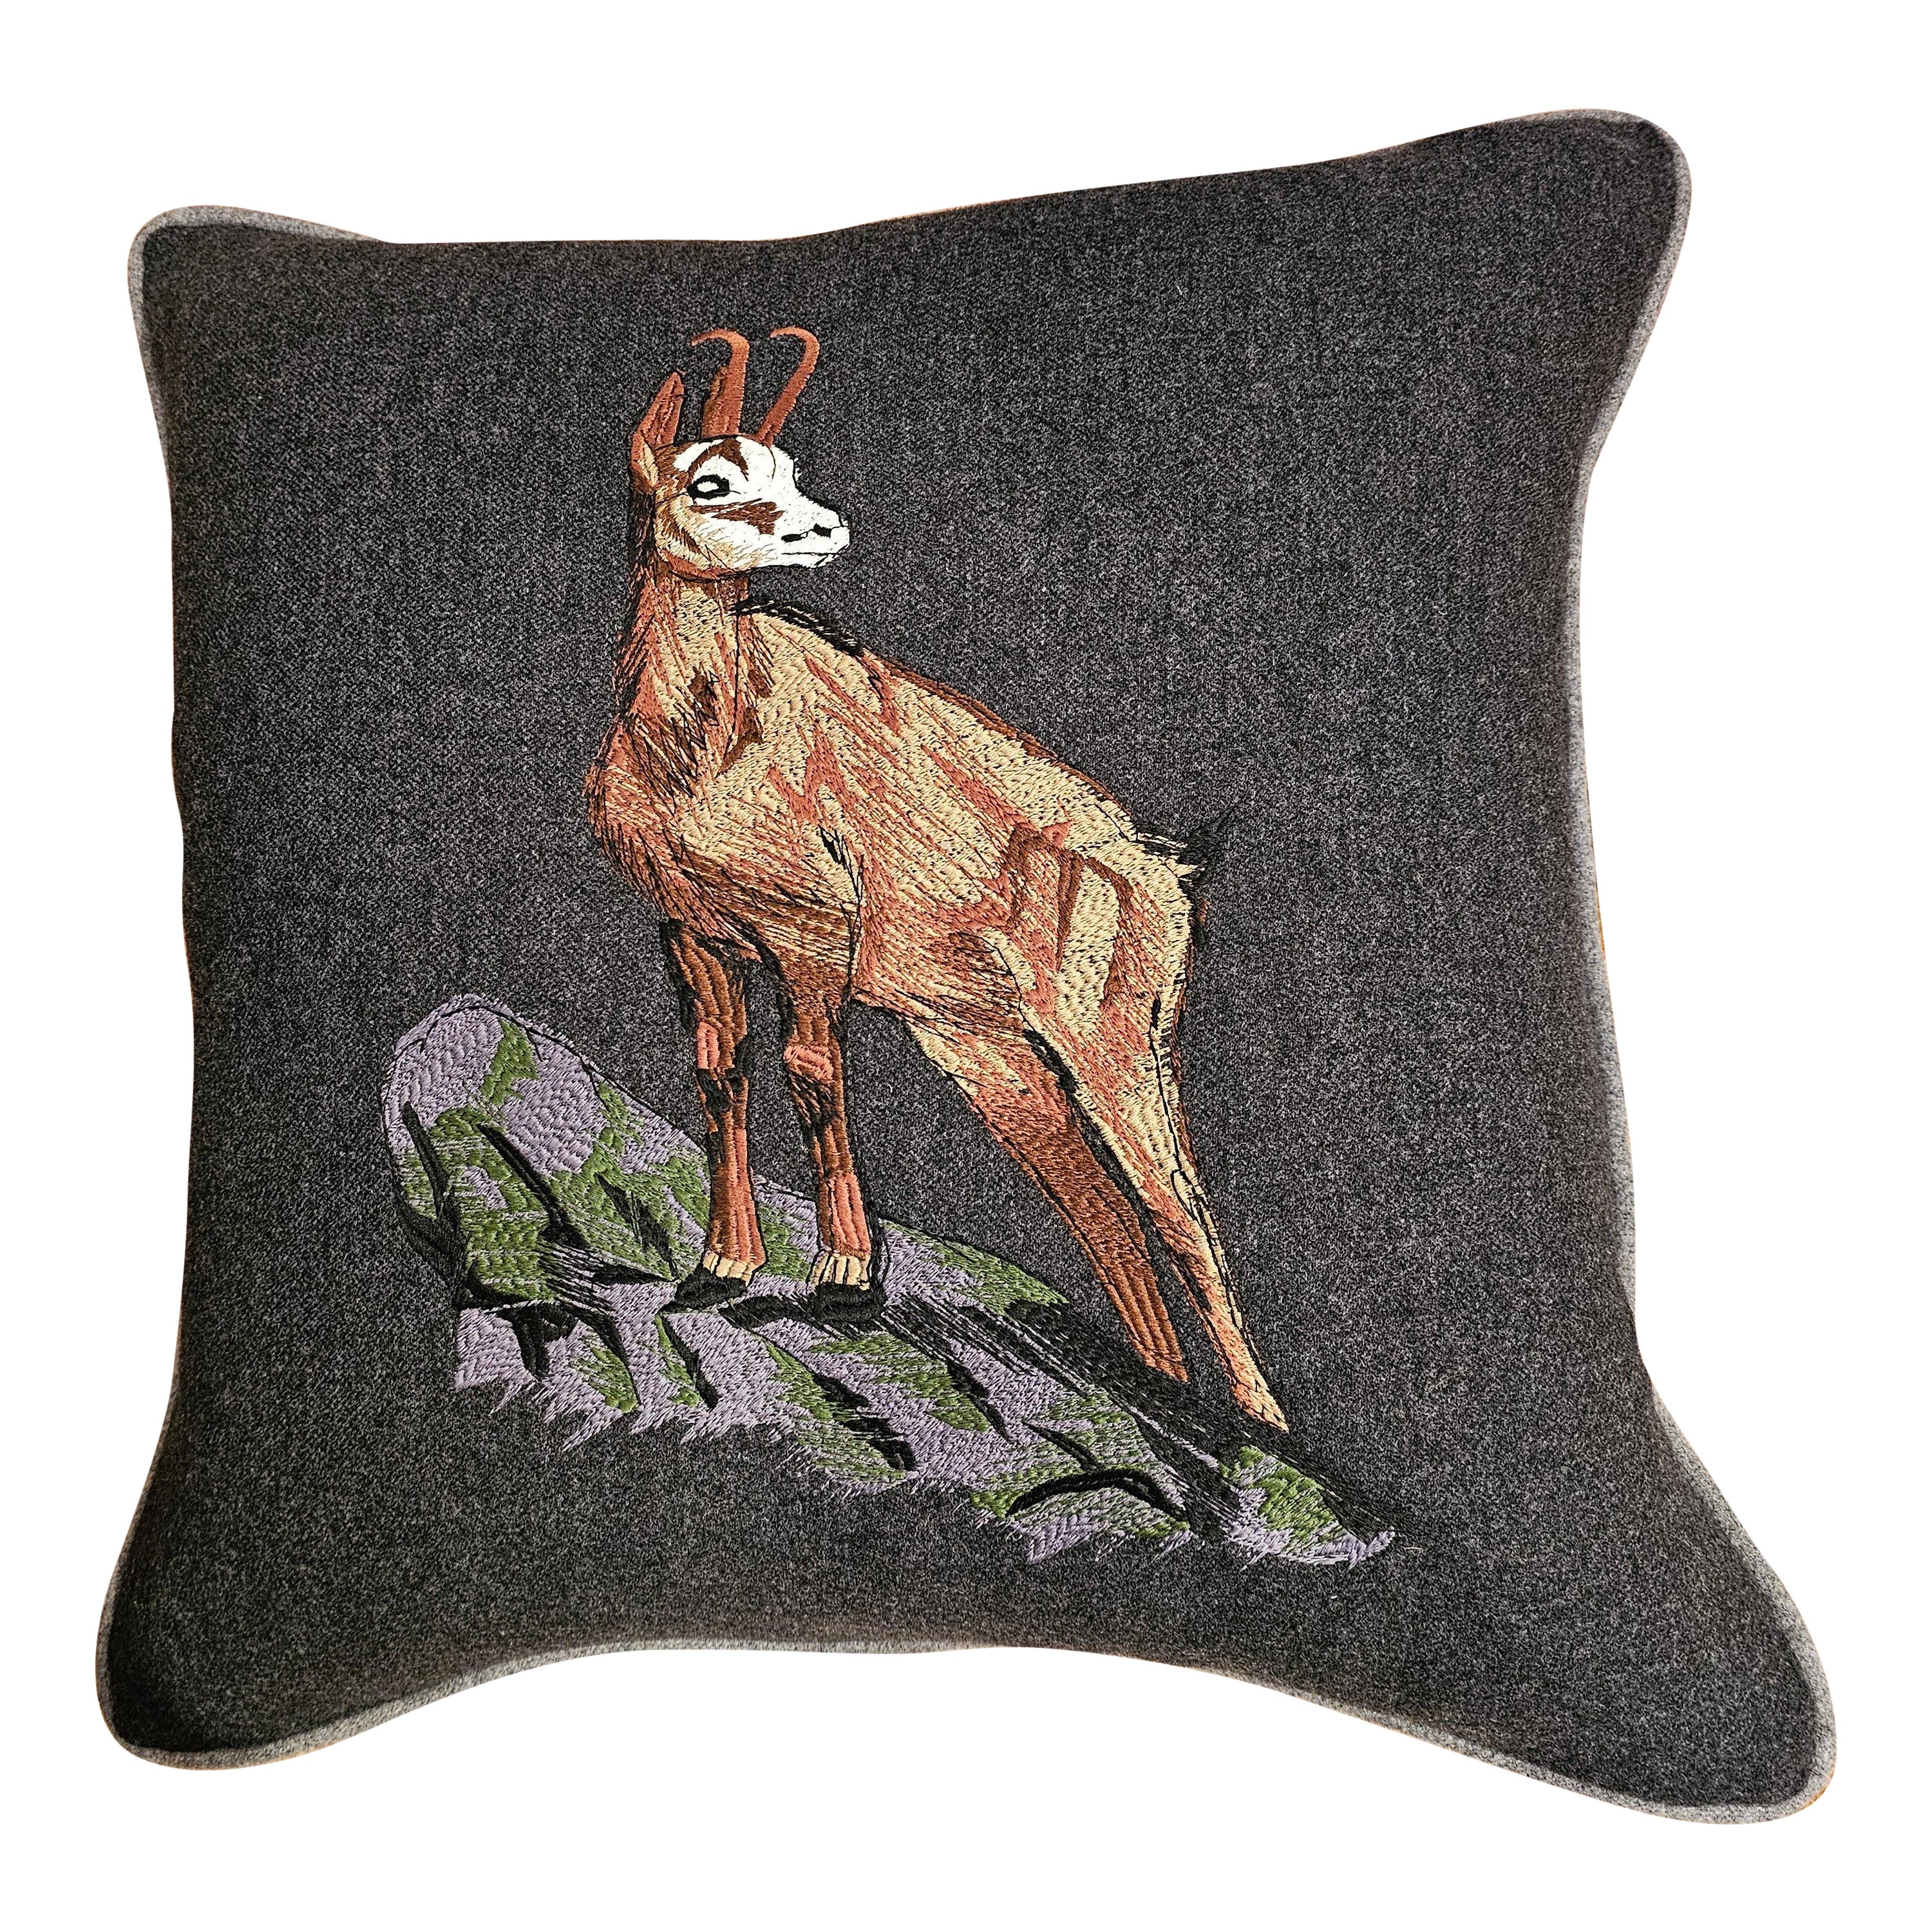 Black Forest Cushion Deer Loden Stitched Sofina Boutique Kitzbühel For Sale